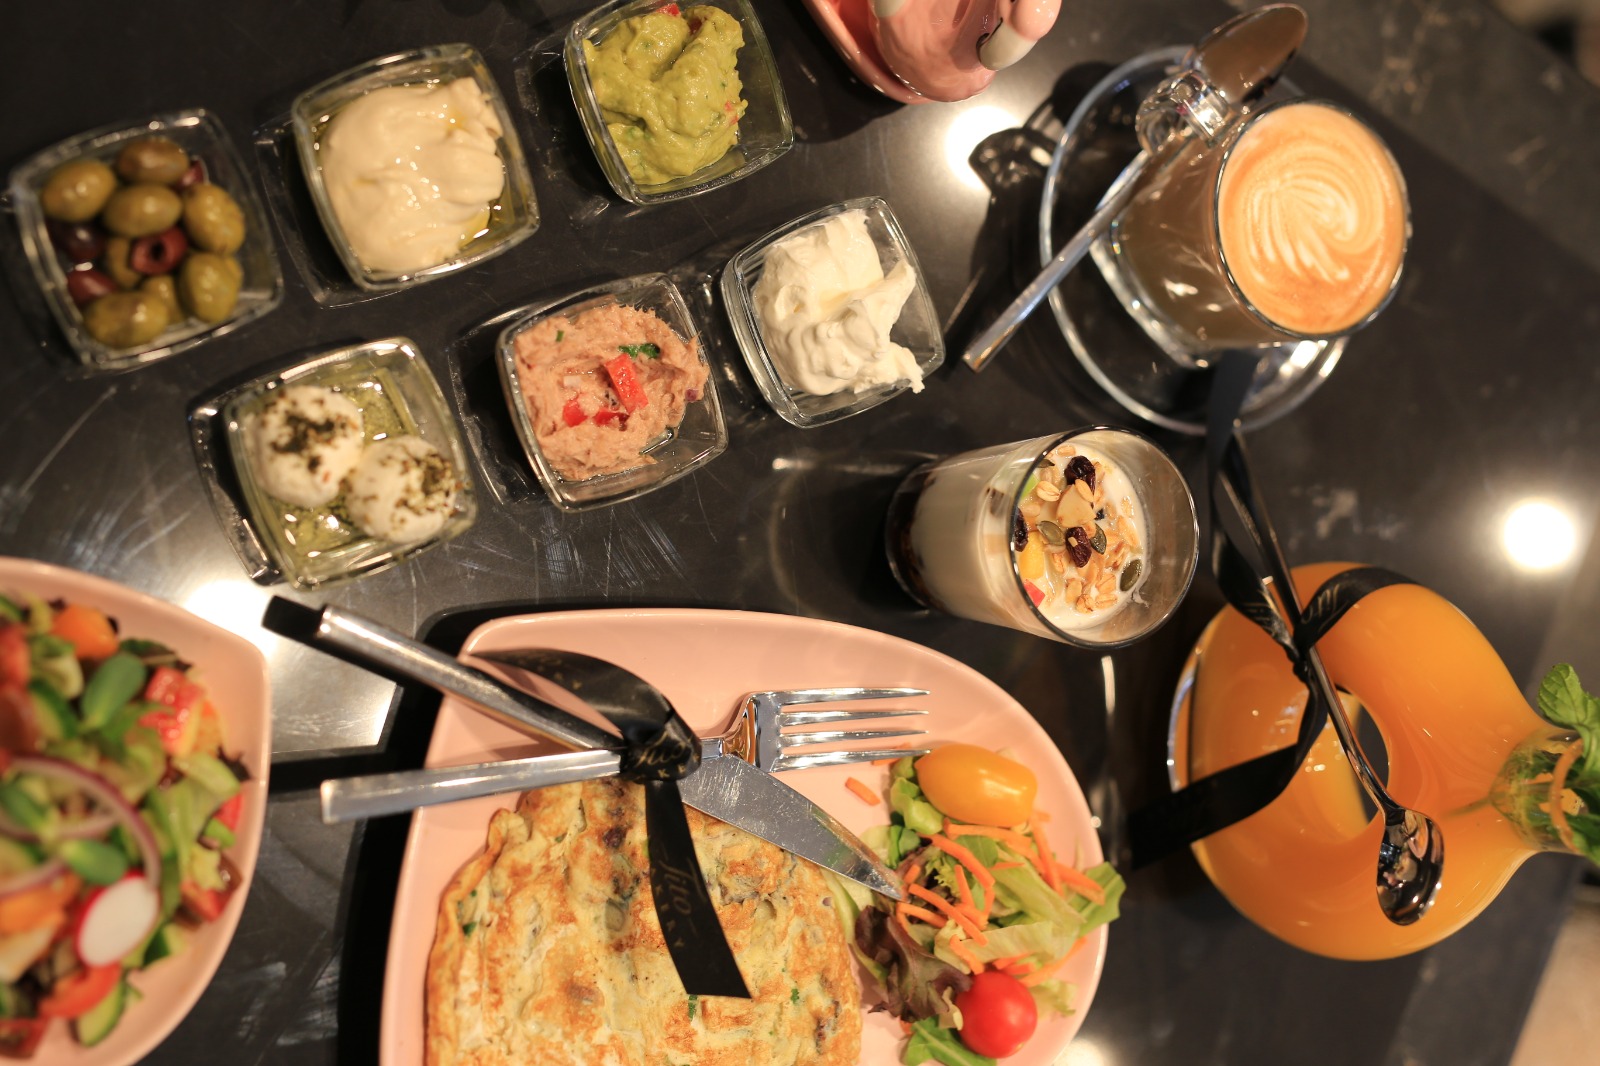 وجبات الافطار بطعم مختلف مع مقهى تيتو في مدينة يافا 